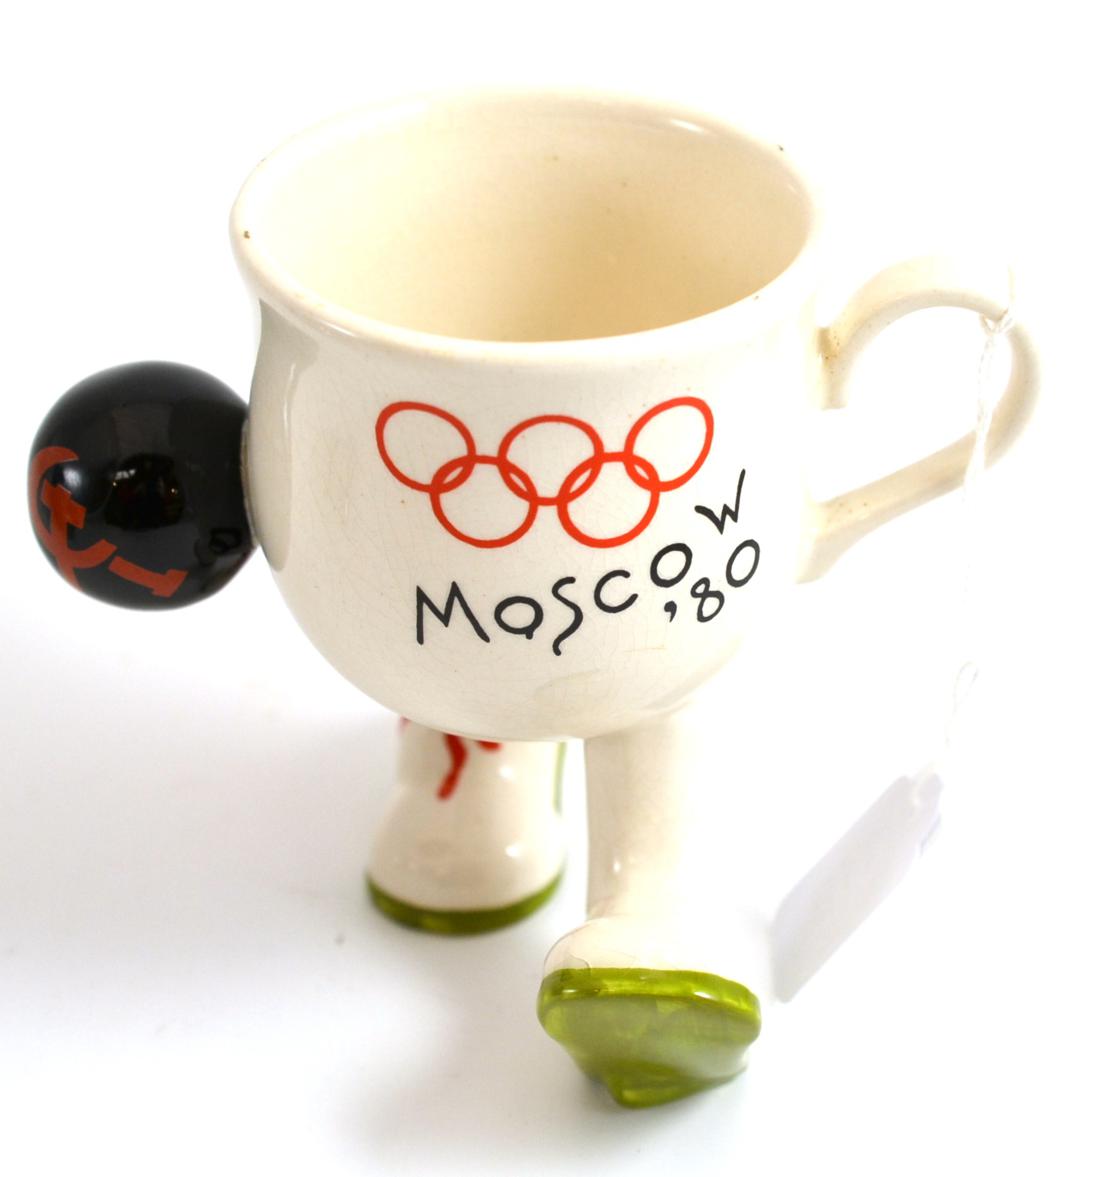 A Carlton ware Olympic 1980 Moscow mug, walking ware